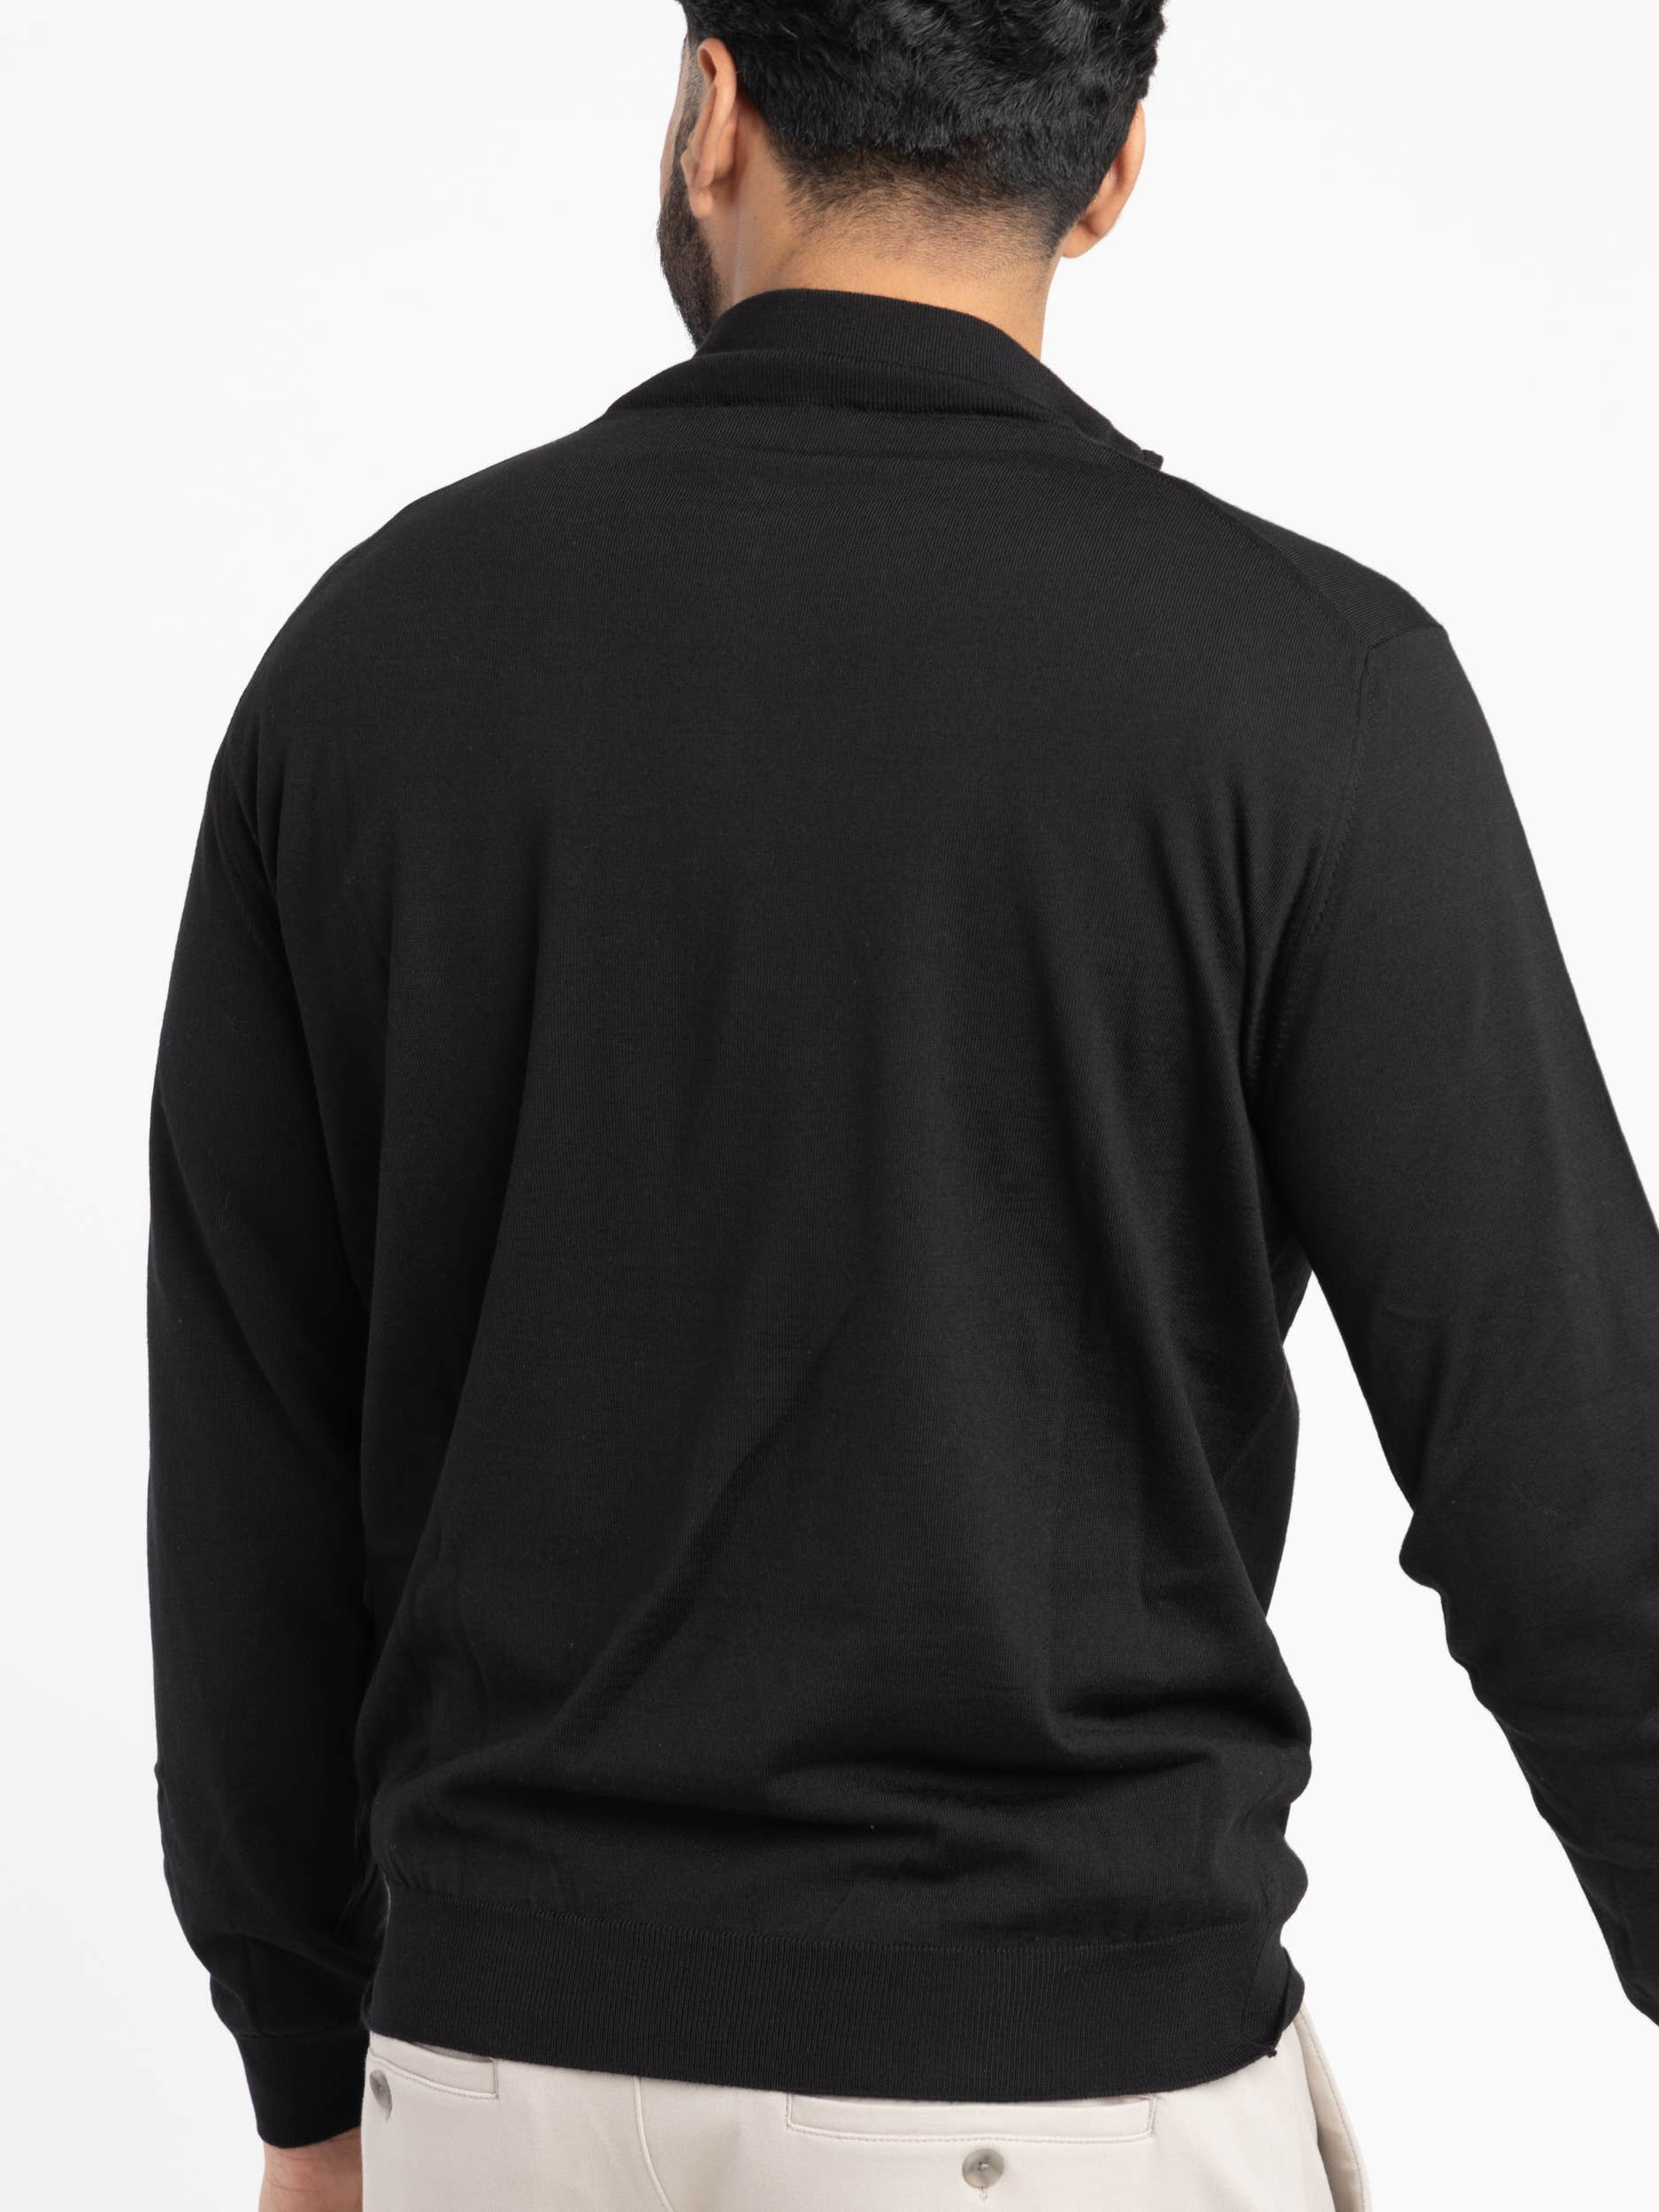 Black Lightweight Wool Quarter Zip Sweater